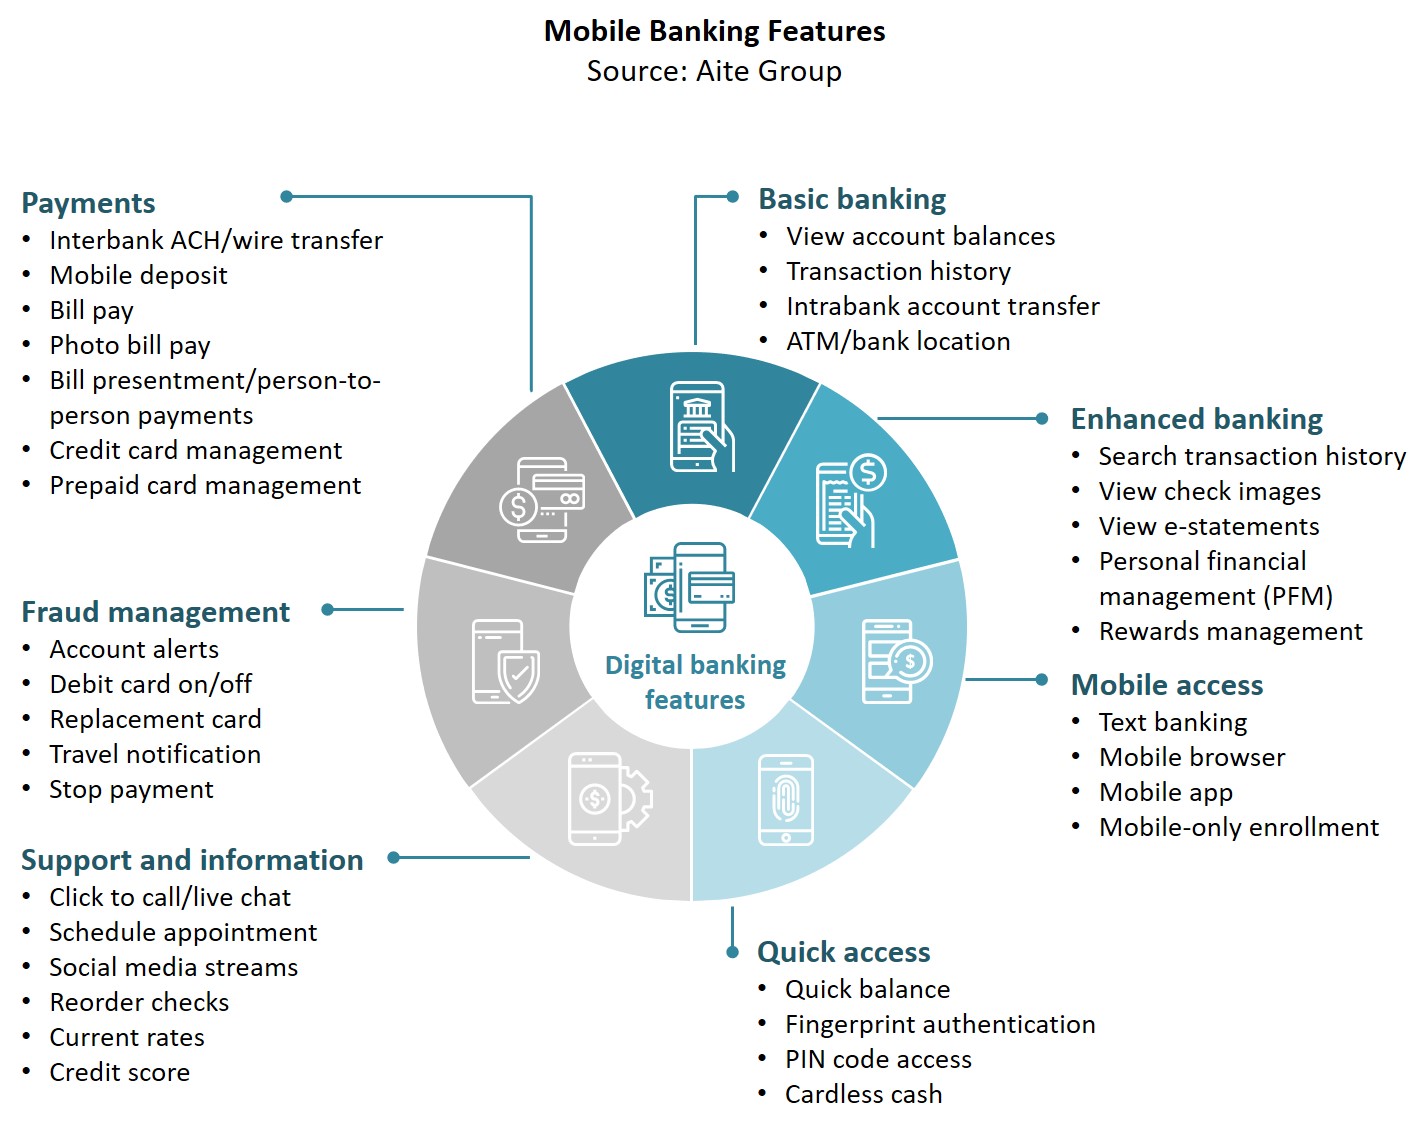 digital banking business plan